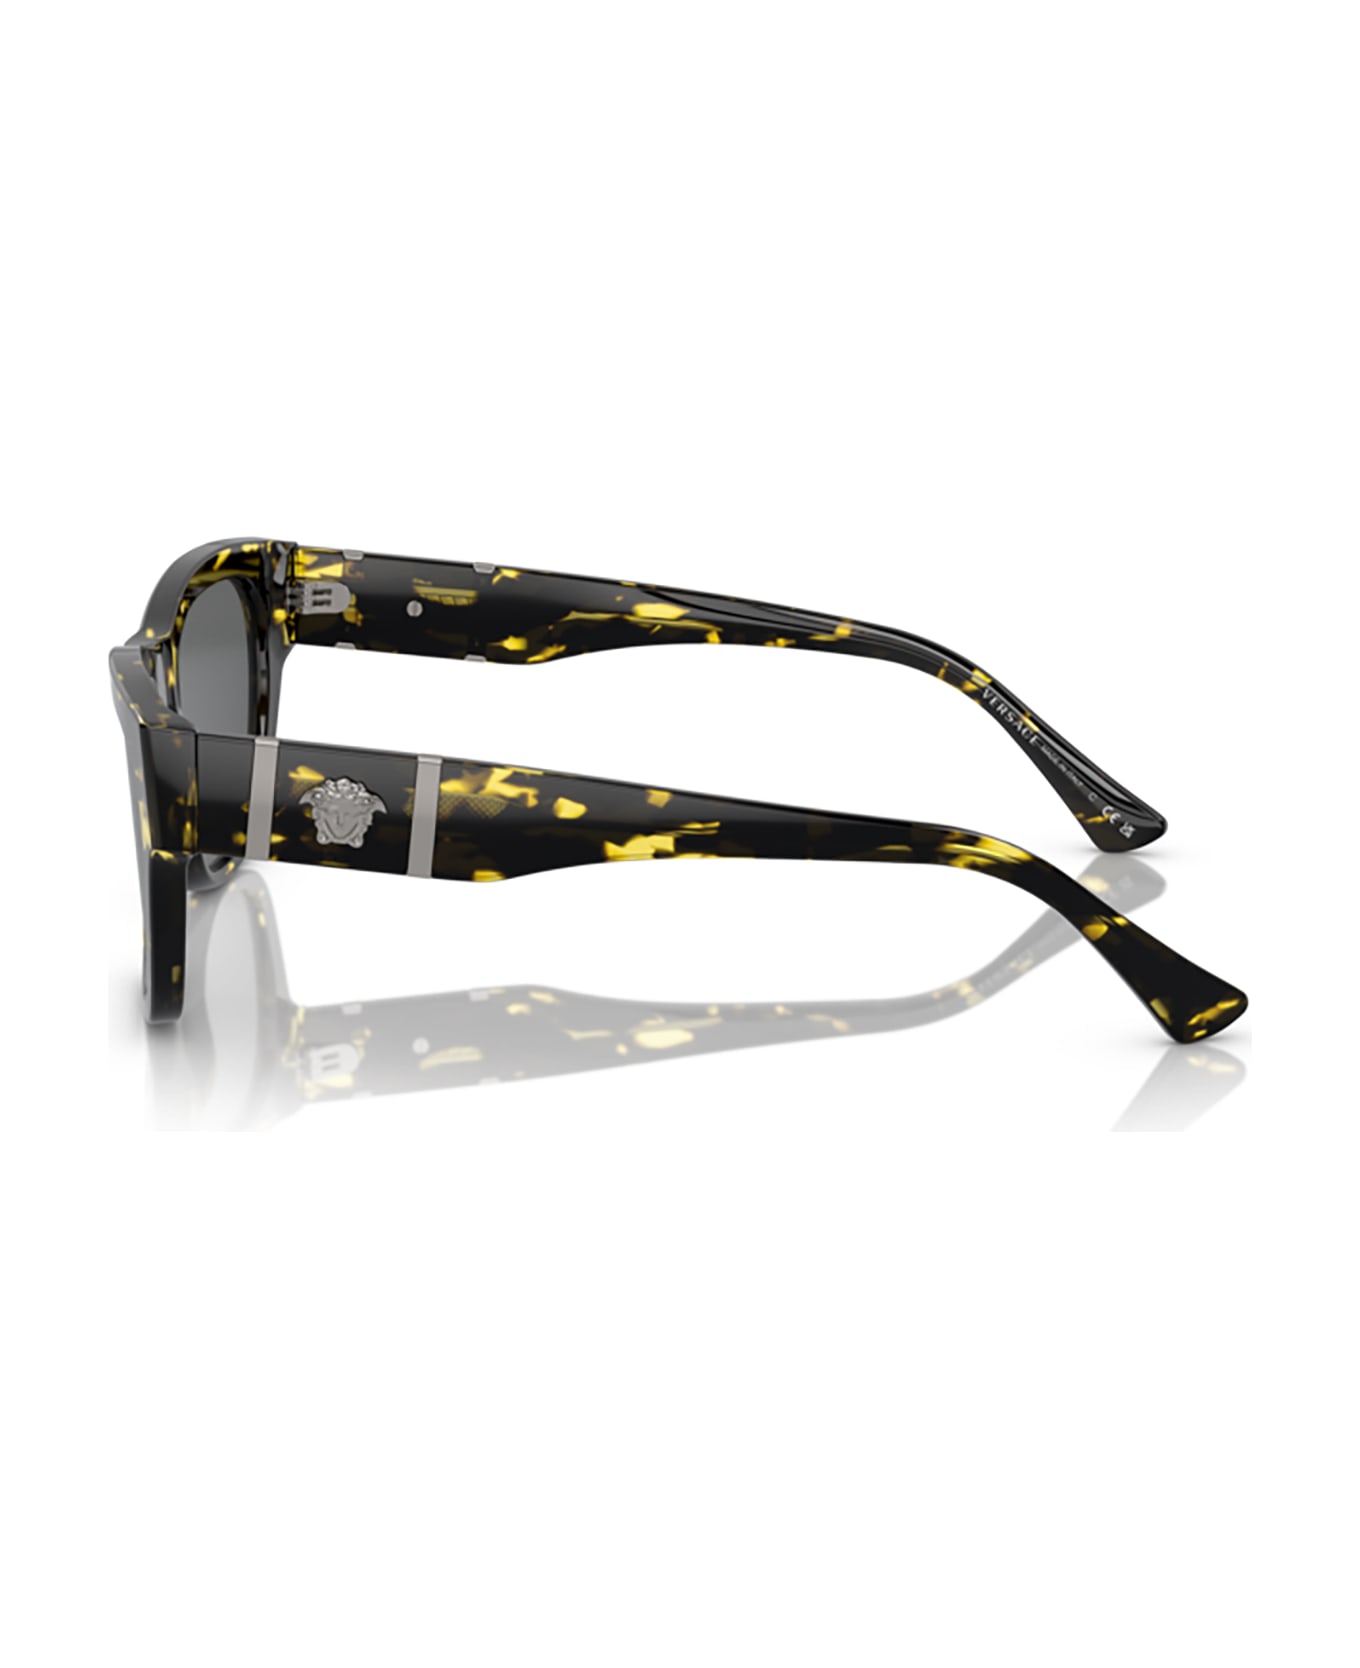 Versace Eyewear Ve4457 Havana Sunglasses - Havana